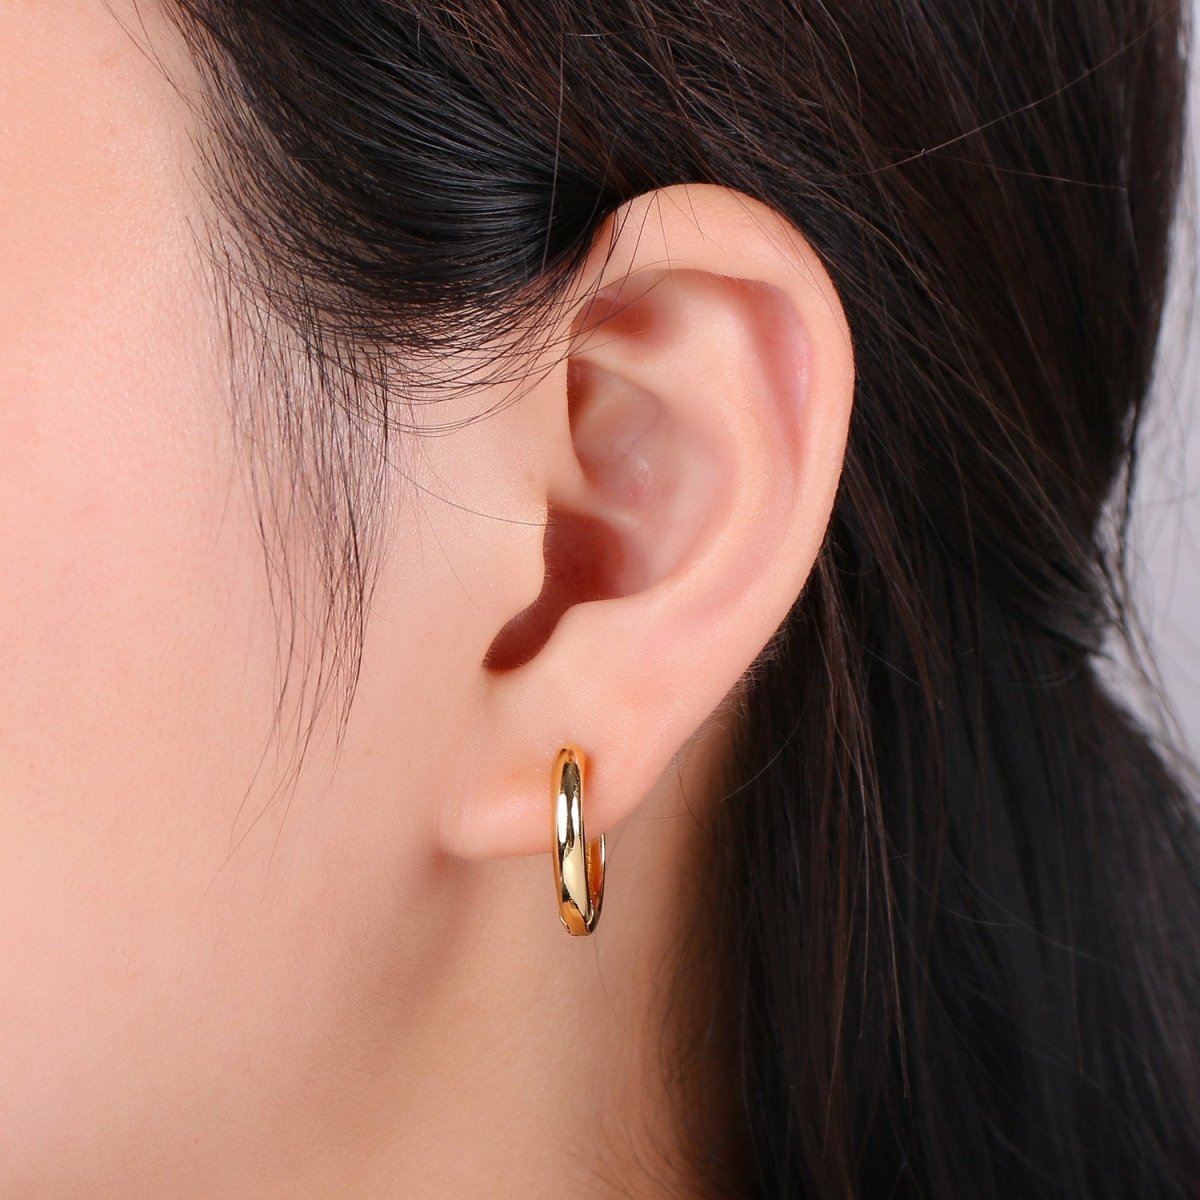 24K Hoop Earrings - Hollow Light Hoop Earrings - Gold Hoops - Simple Everyday Earrings 18mm Q-188 - DLUXCA